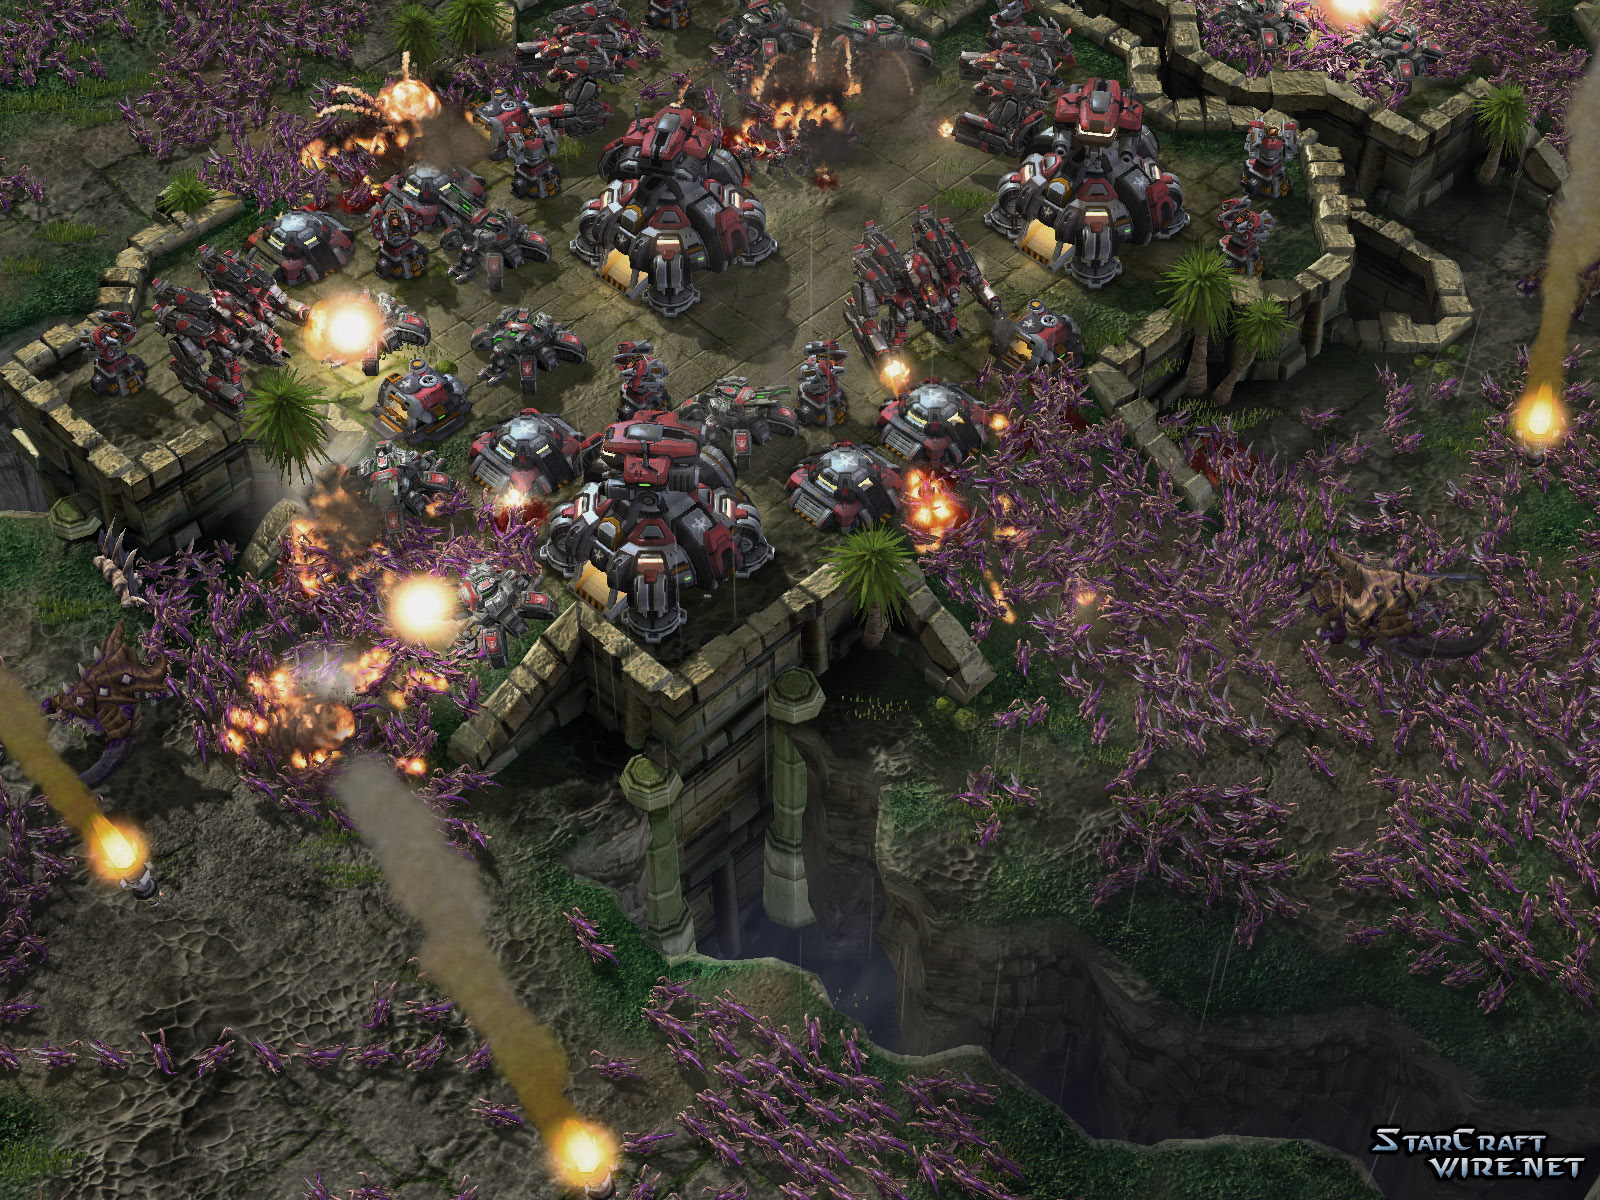 Immagine pubblicata in relazione al seguente contenuto: Blizzard, 8 nuovi screenshots di StarCraft II in single player | Nome immagine: news9522_3.jpg